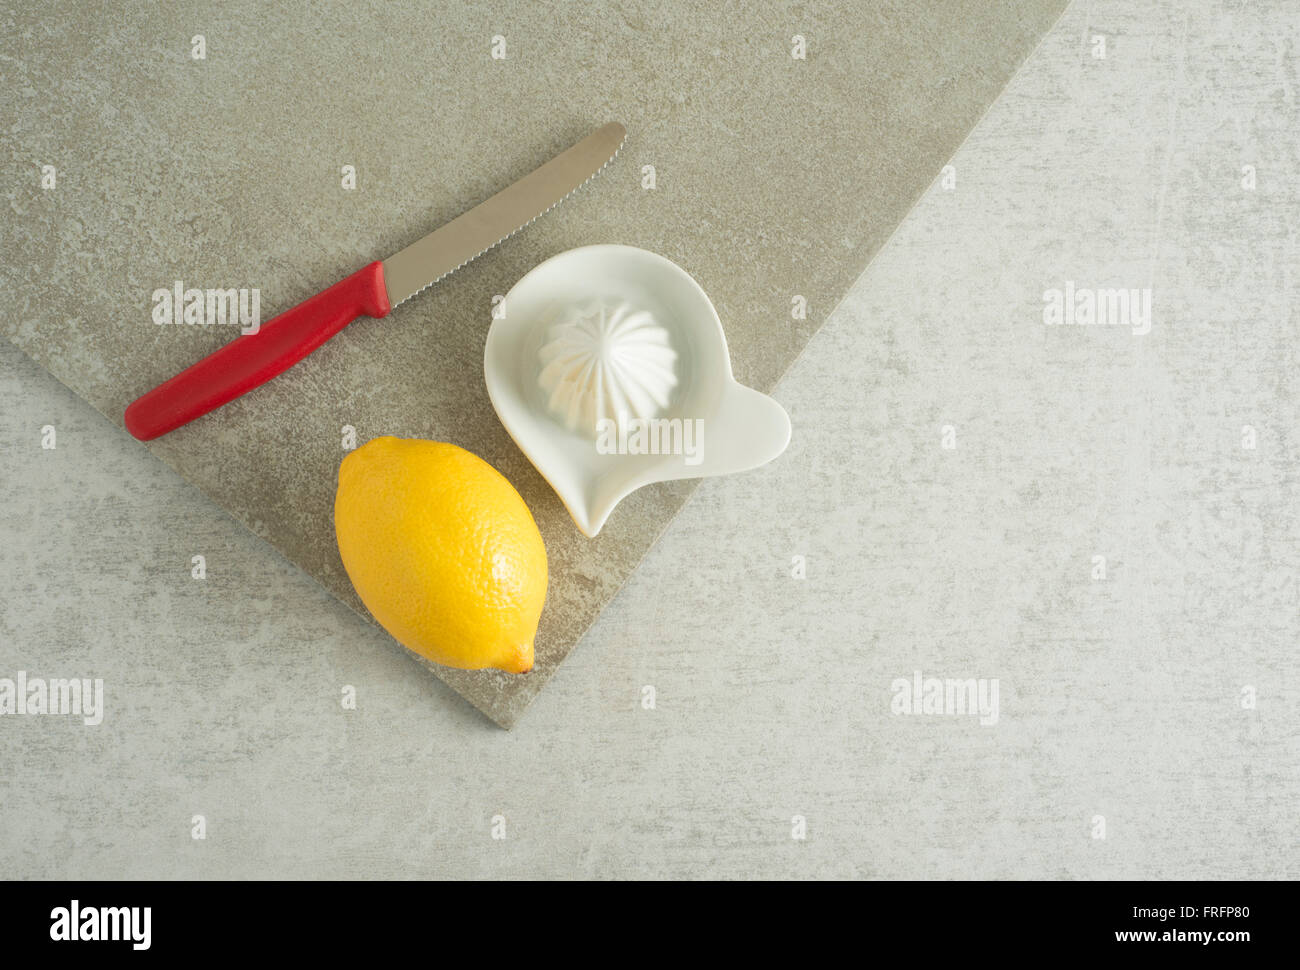 Citron, le couteau et le presse-agrumes sur table de cuisine. Concept de la préparation et la cuisson de fruits frais. Banque D'Images